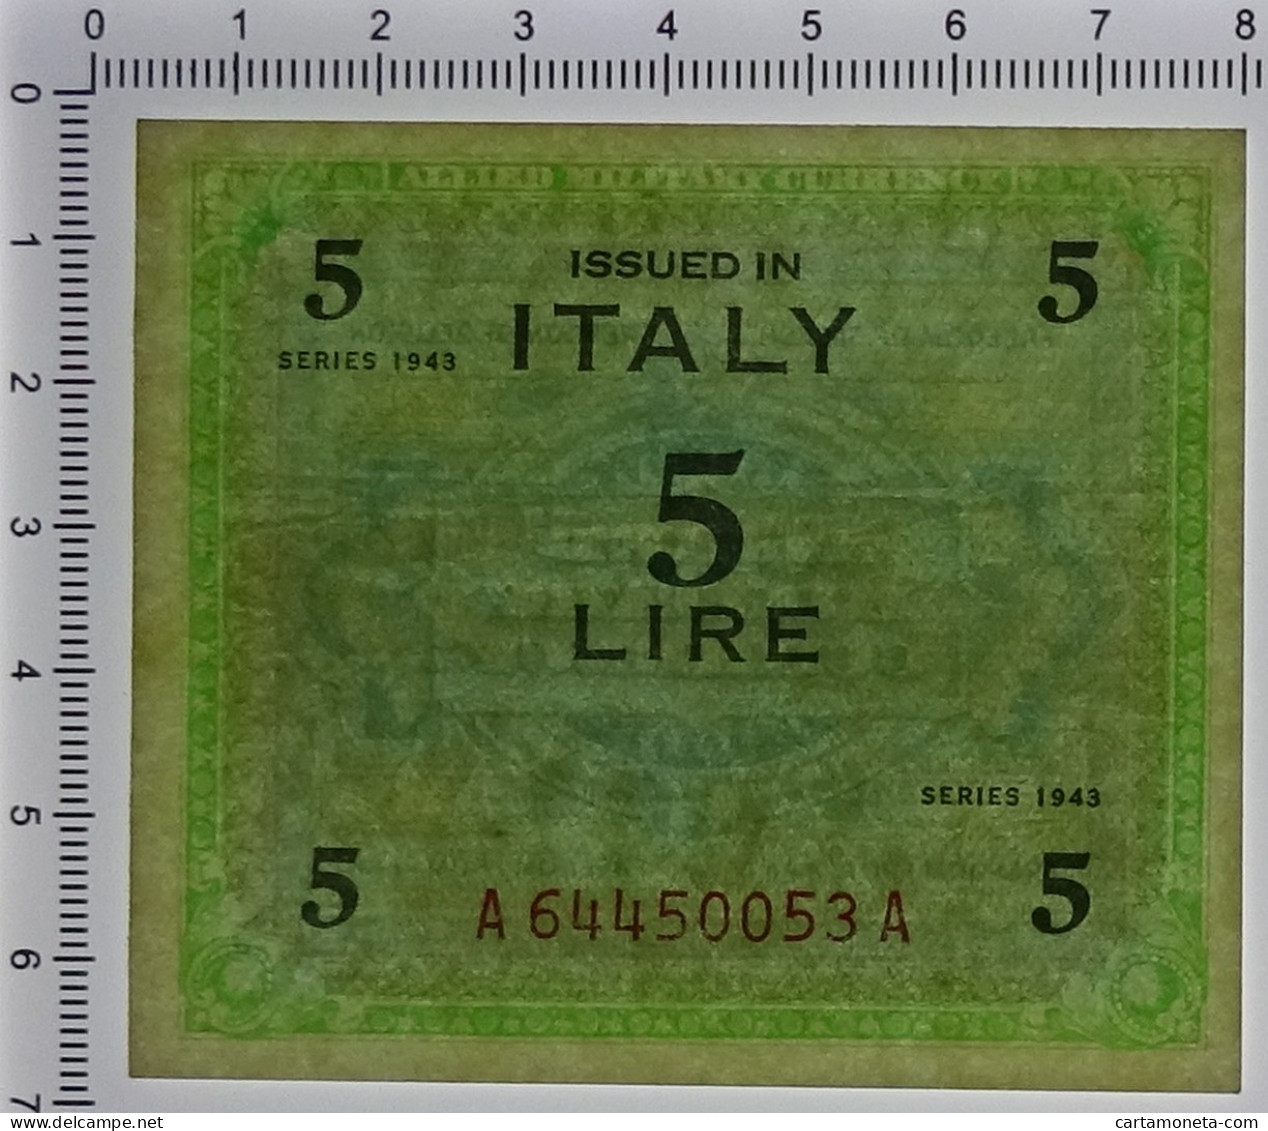 5 LIRE OCCUPAZIONE AMERICANA IN ITALIA MONOLINGUA FLC 1943 FDS-/FDS - 2. WK - Alliierte Besatzung